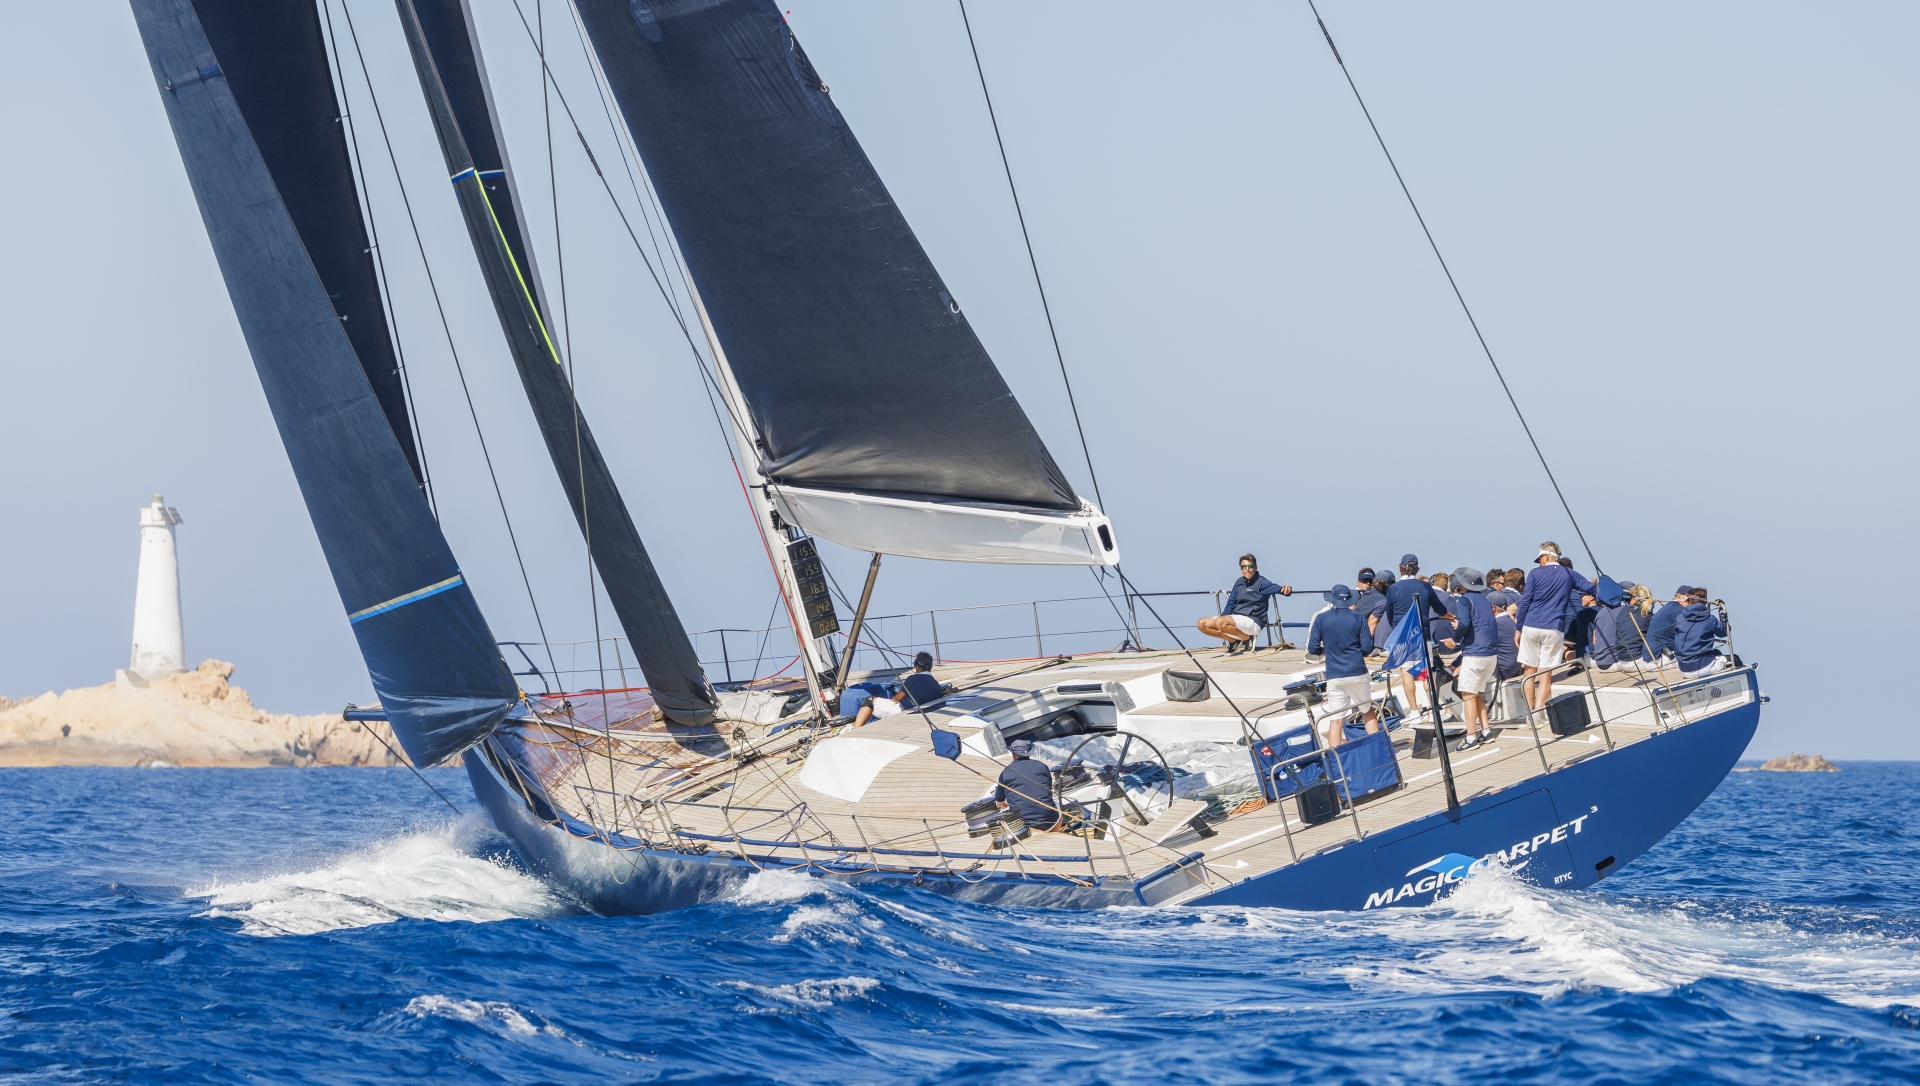 Giorgio Armani Superyacht Regatta, Magic Carpet Cubed è il vincitore assoluto - News - Yacht Club Costa Smeralda